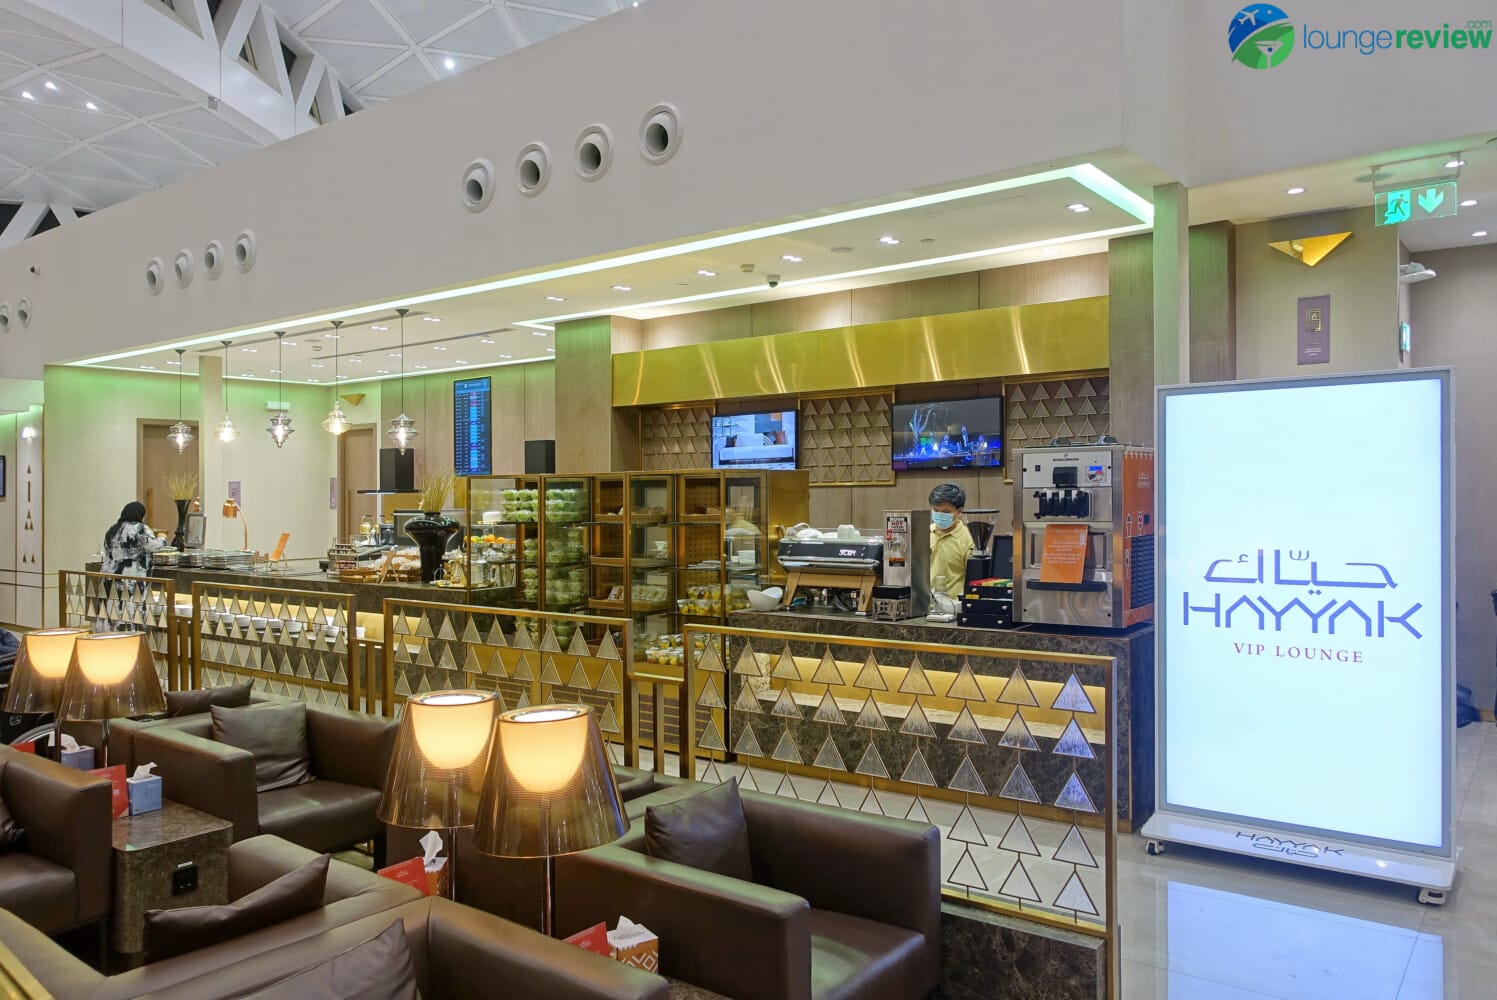 Hayyak Lounge Riyadh coffee shop